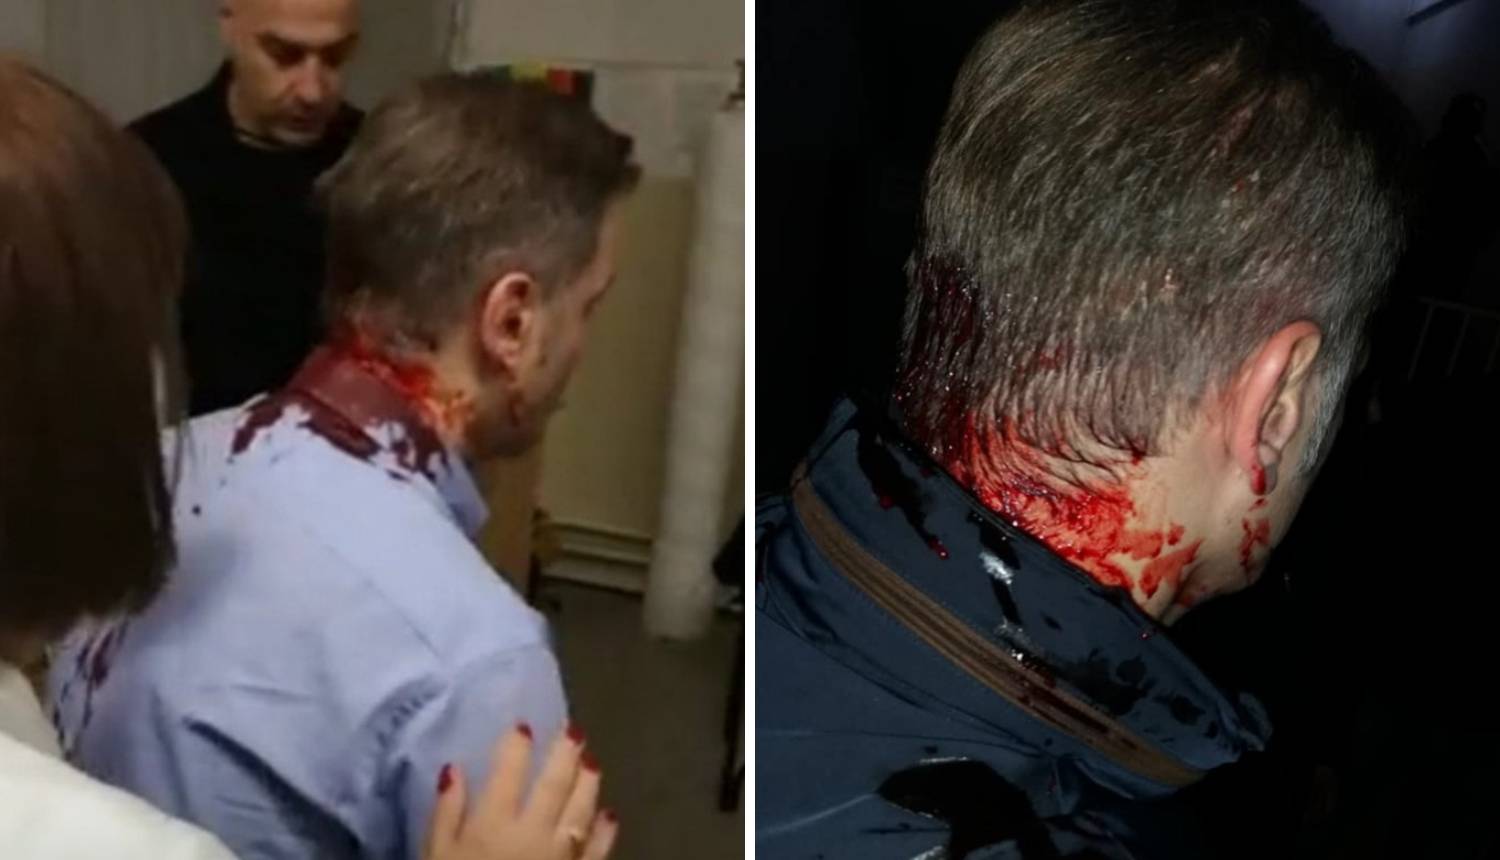 Napali političara u Srbiji: Glava mu je krvava, tukli ga letvama